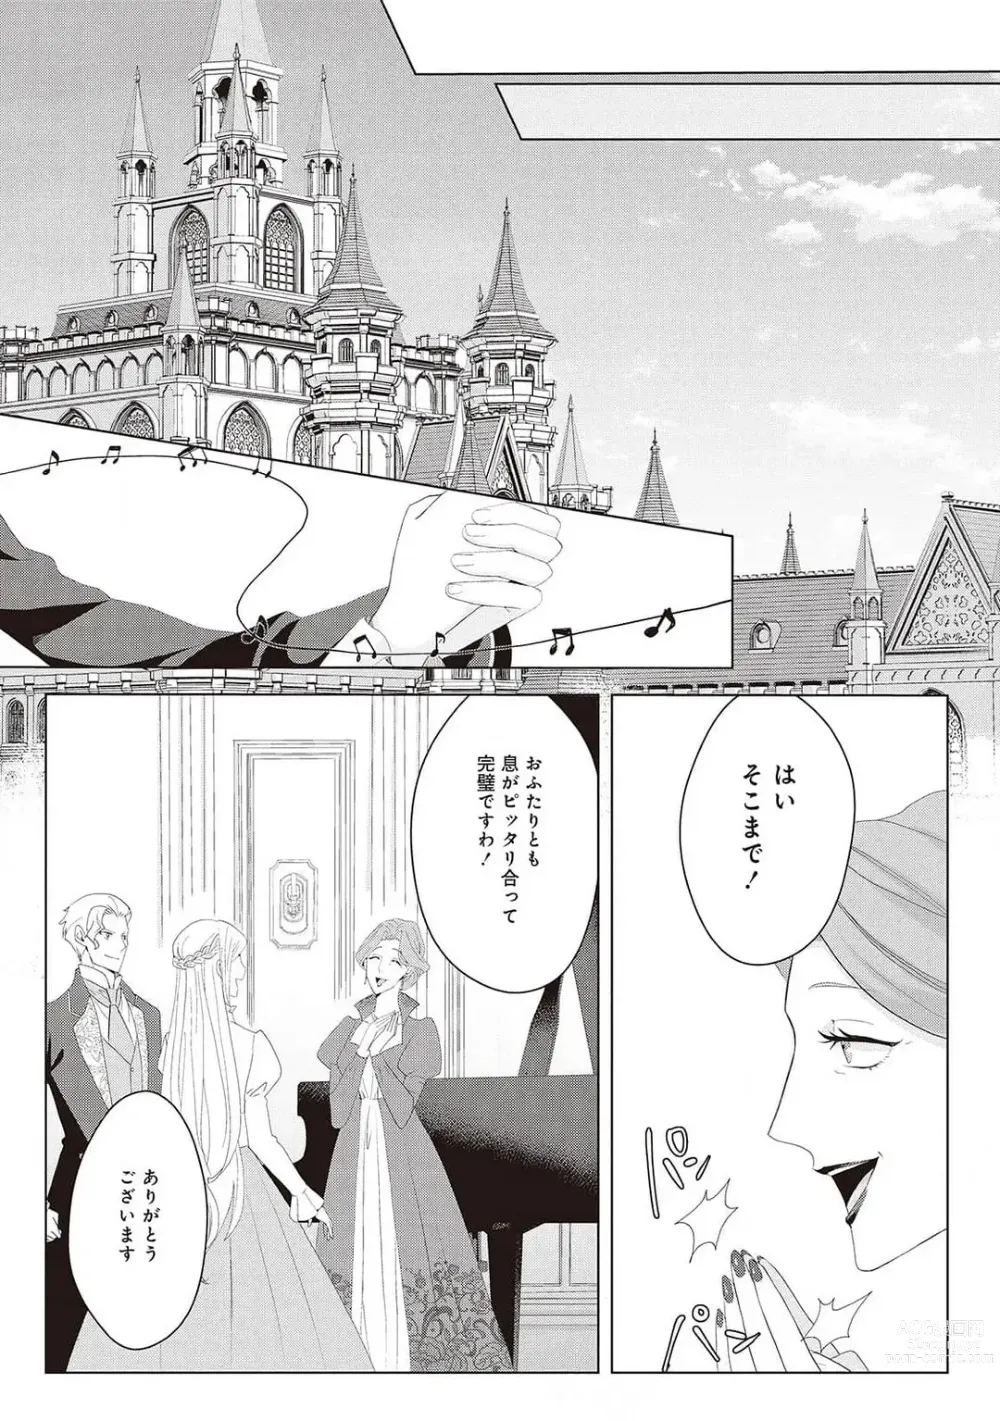 Page 419 of manga 悪役令嬢に転生したけど、破局したはずのカタブツ王太子に溺愛されてます！？ 1-18